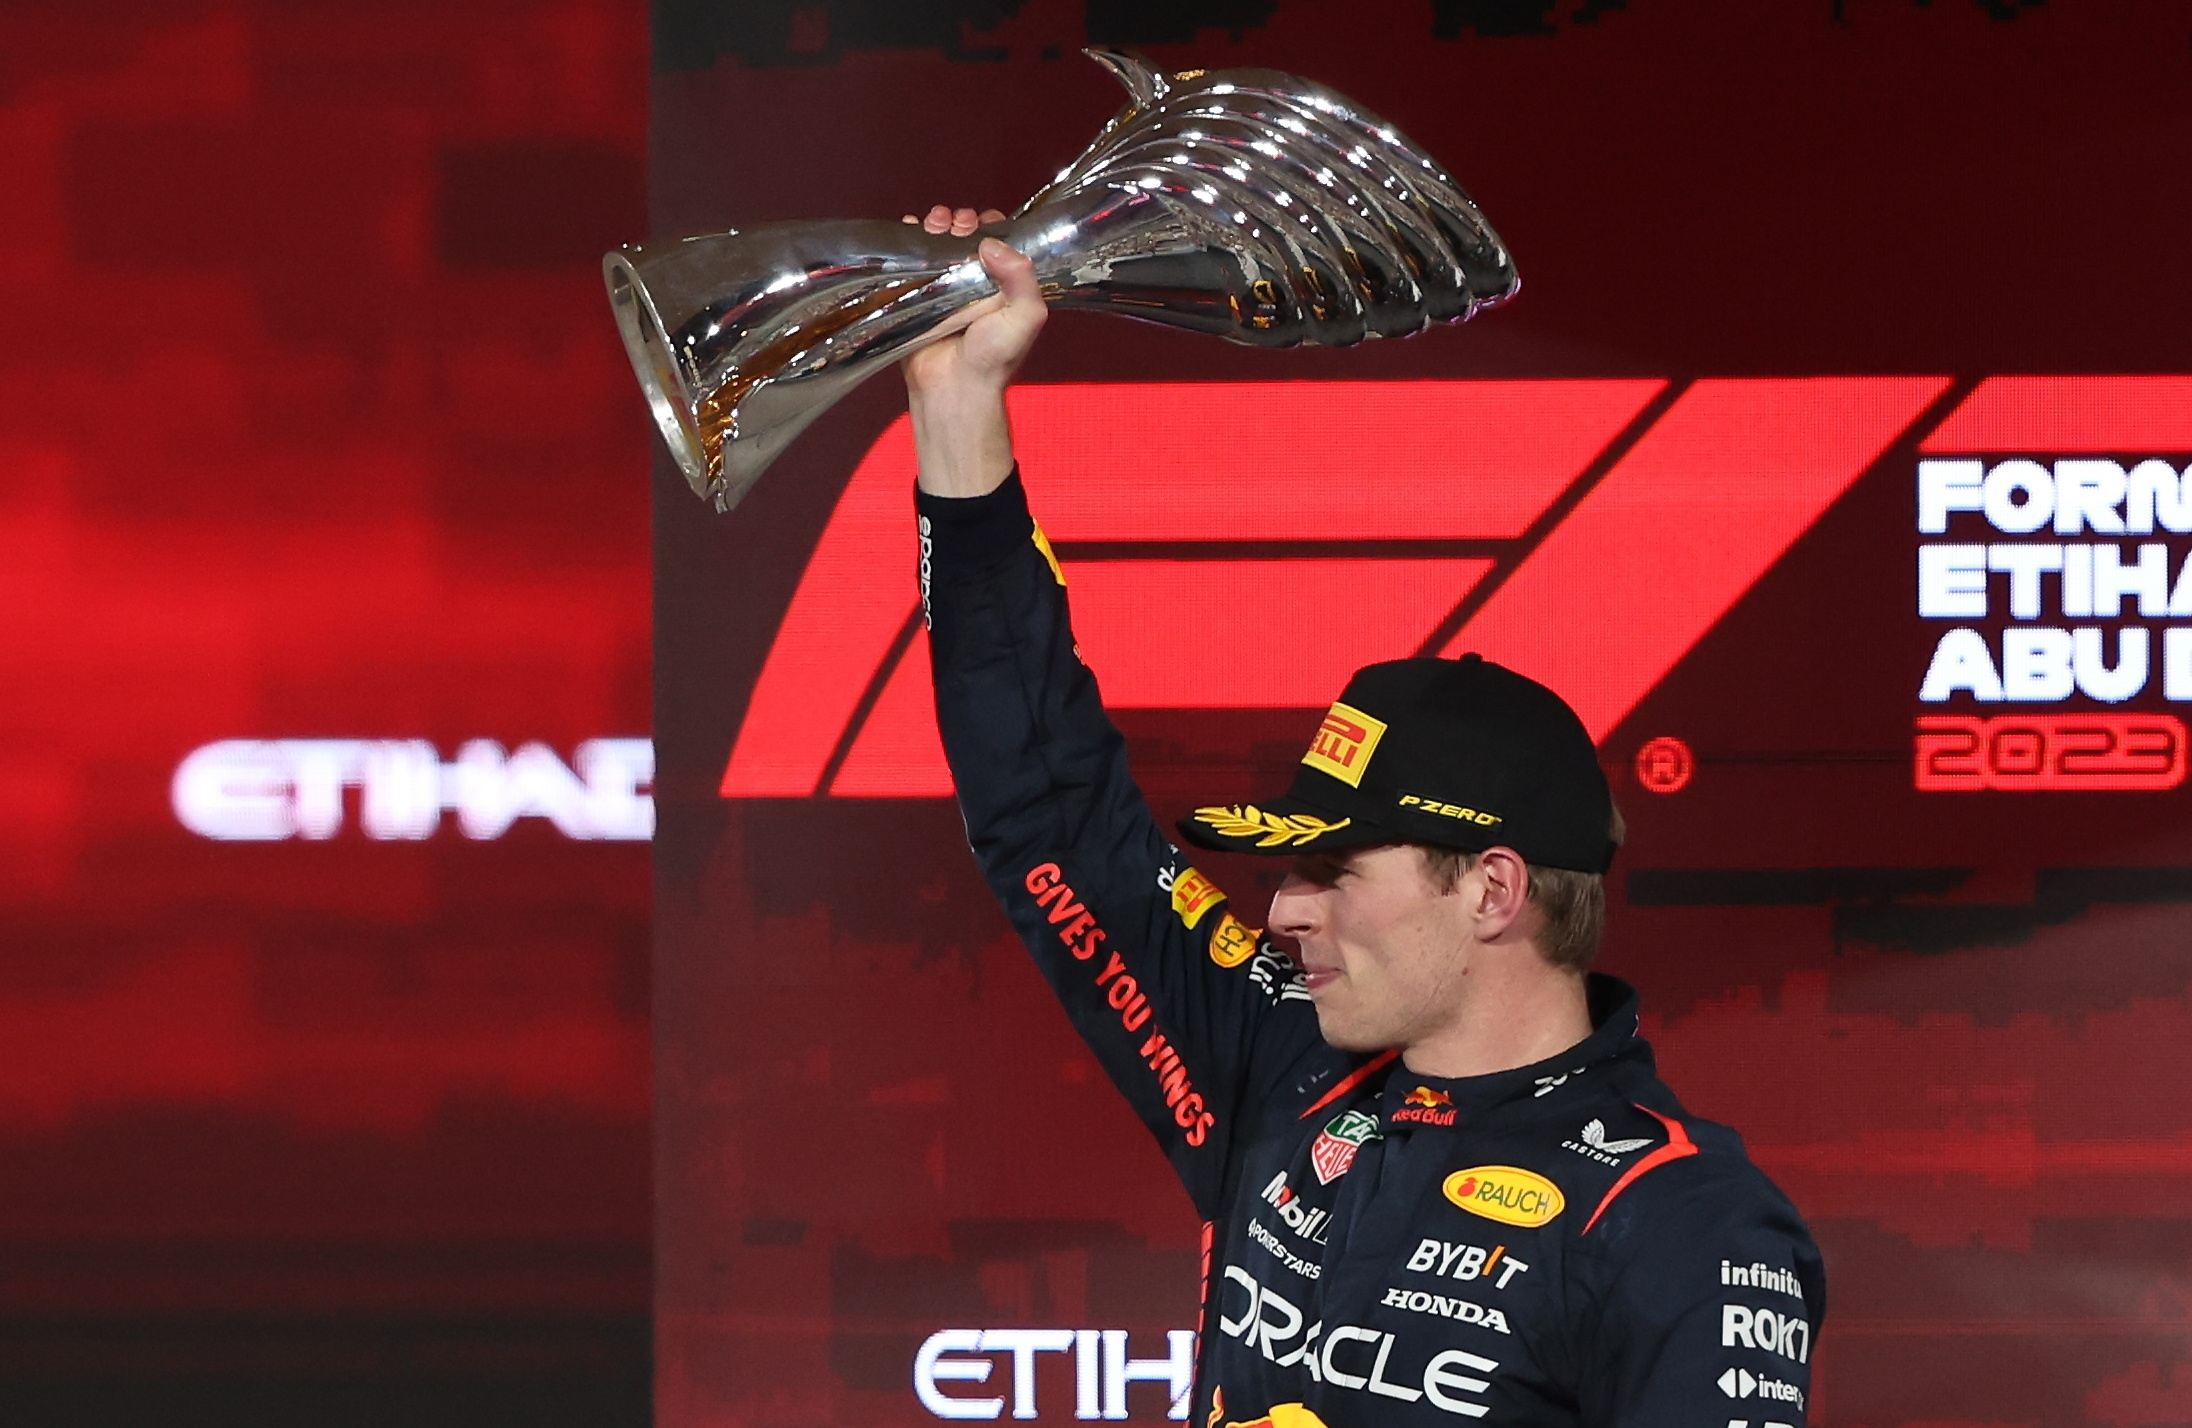 El piloto neerlandés, Max Verstappen de Red Bull Racing, celebra con el trofeo de Fórmula 1 en Abu Dhabi. (Foto Prensa Libre:EFE) /EPA/ALI HAIDER